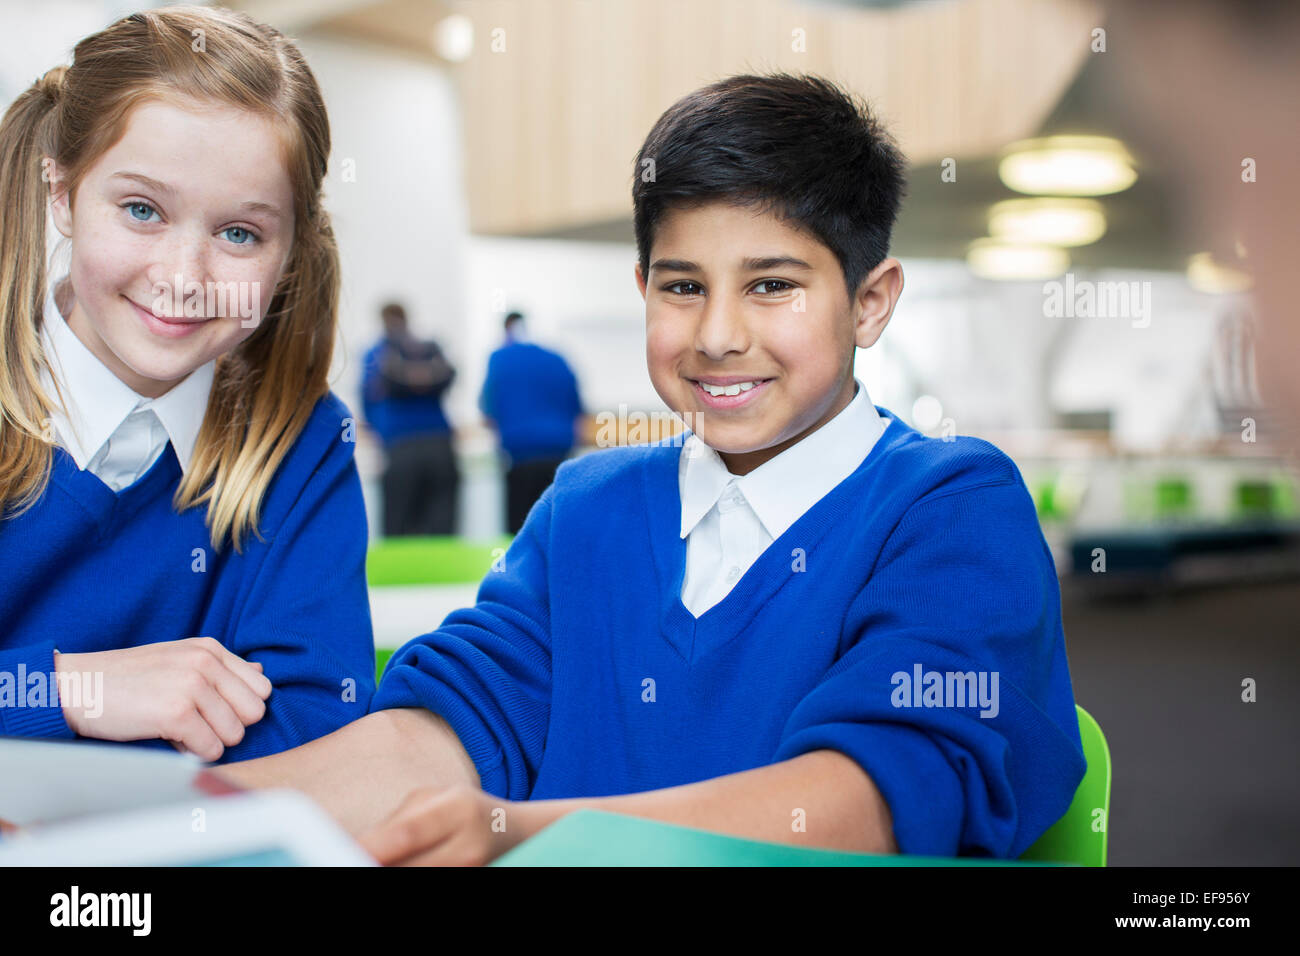 Porträt des Lächelns Schulkinder tragen blaue Schuluniformen am Schreibtisch Stockfoto